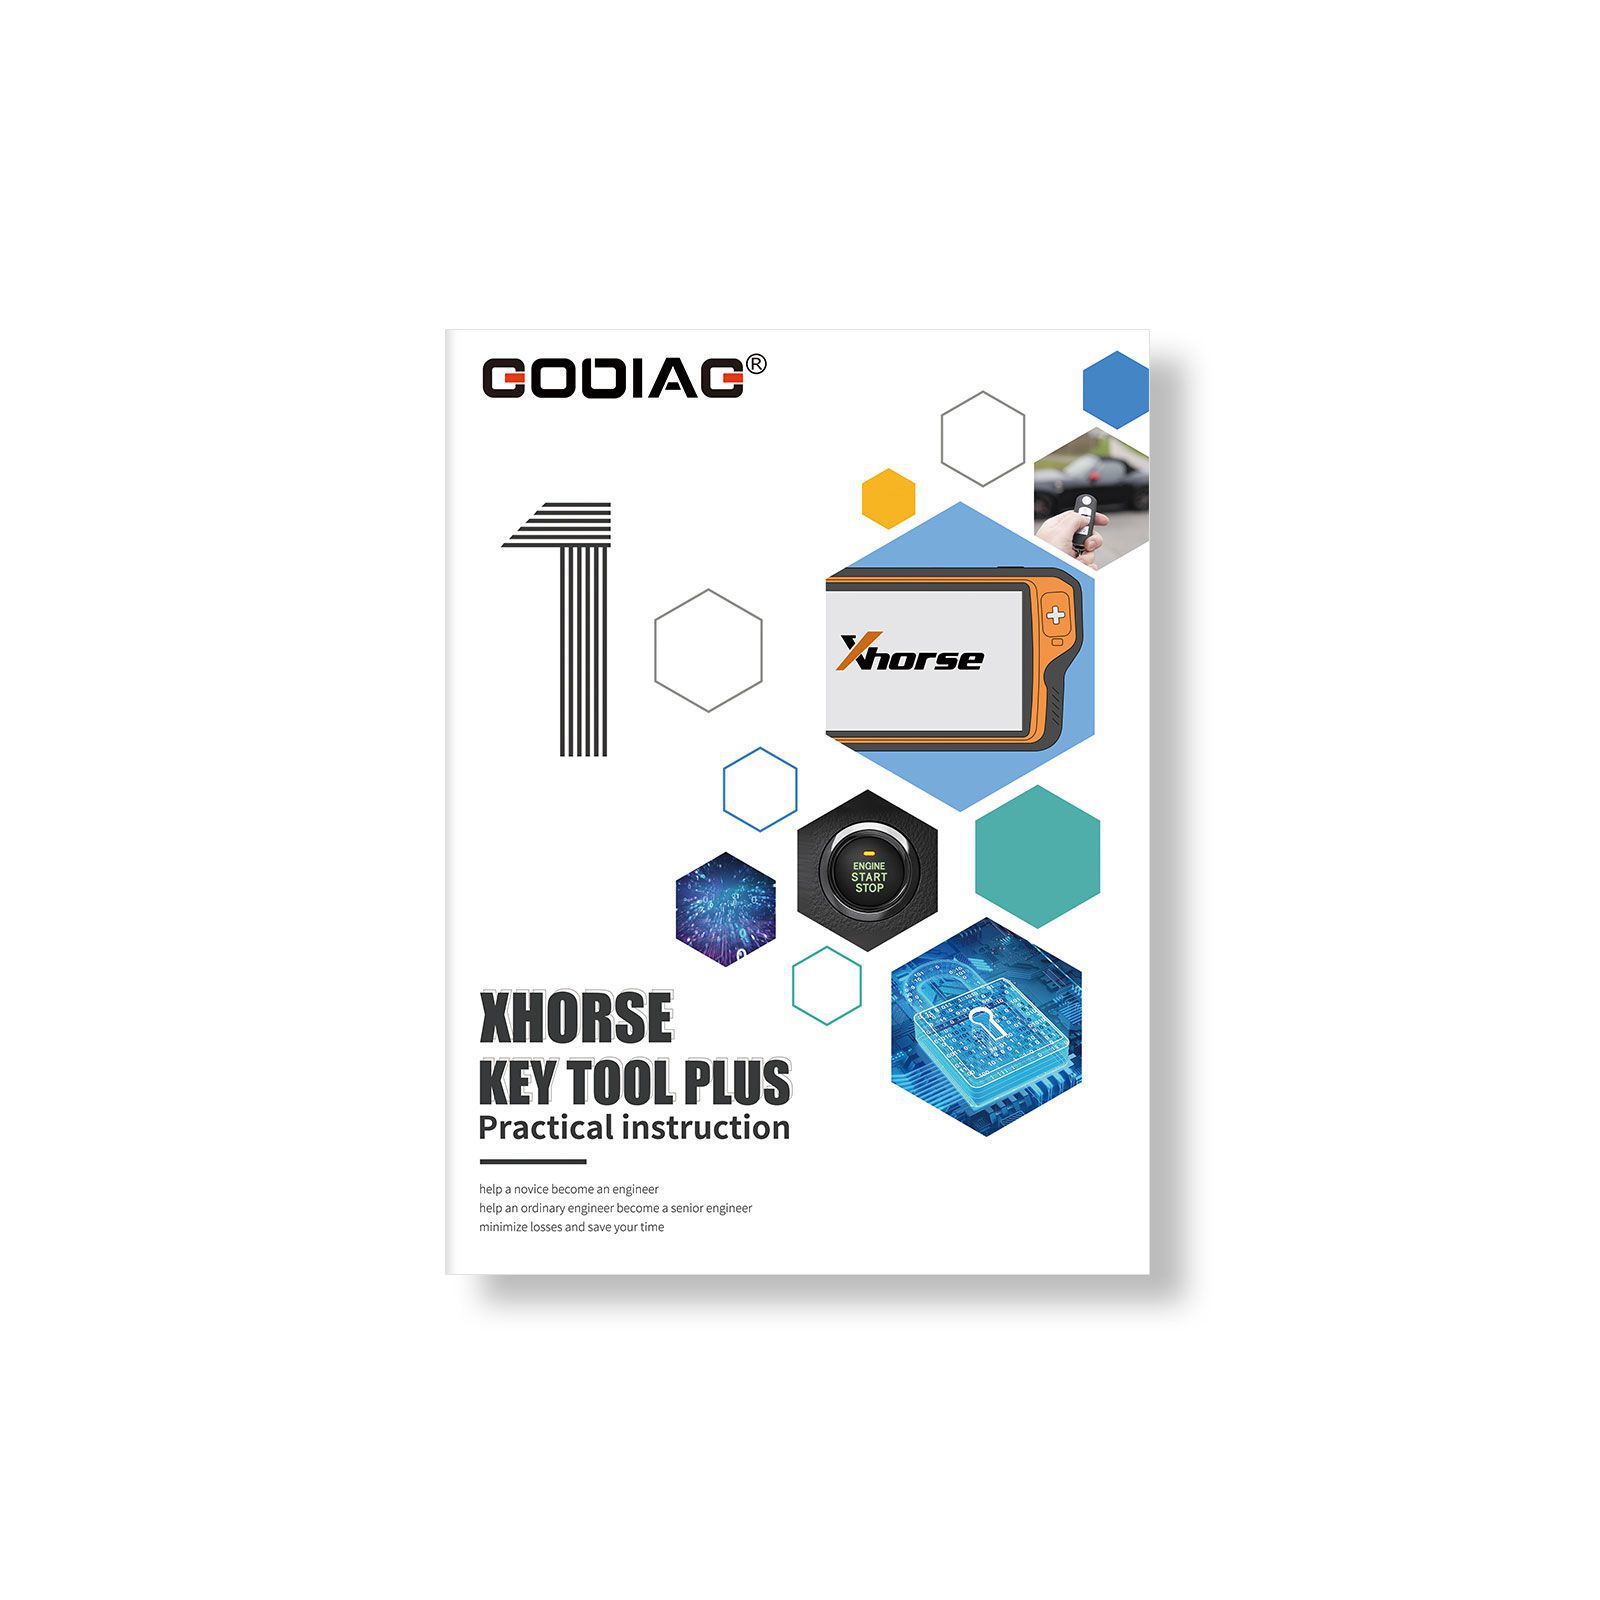 Xhorse VVDI Key Tool Plus Pad mit GODIAG Praktische Anleitung 1&2 Zwei Bücher